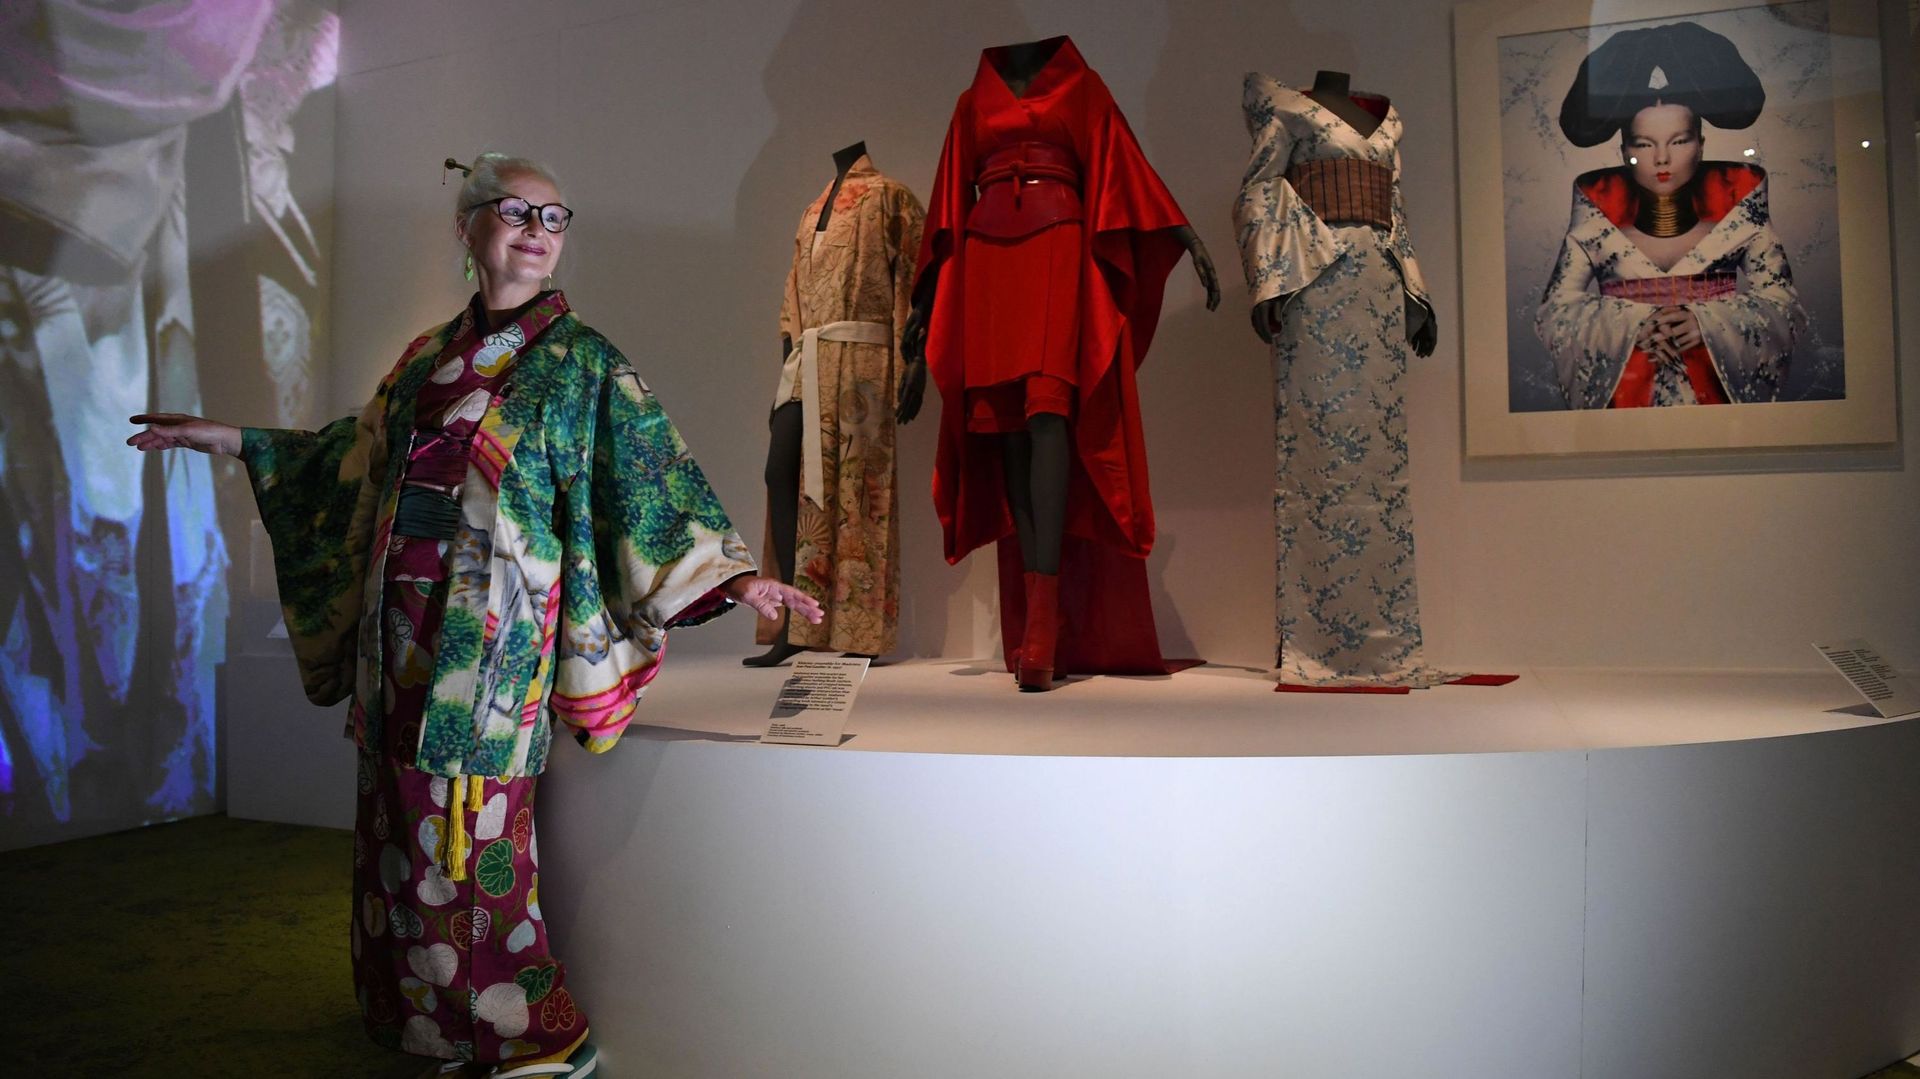 Des samouraïs aux Jedi, mille déclinaisons de kimono s’exposent à Londres